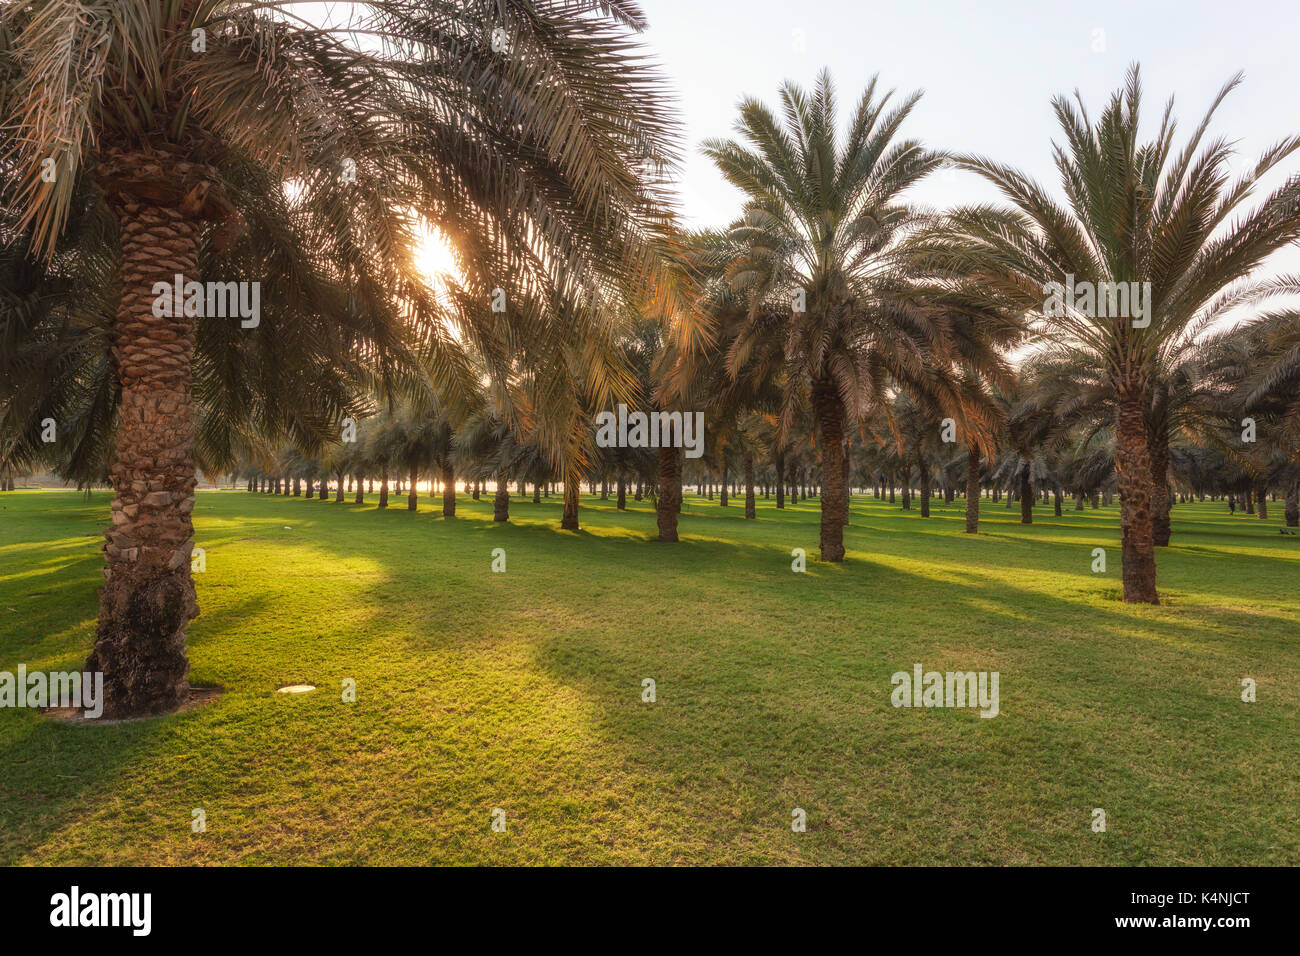 Frutteto con palm data di alberi con giardino verde in Dubai Emirati arabi uniti Foto Stock